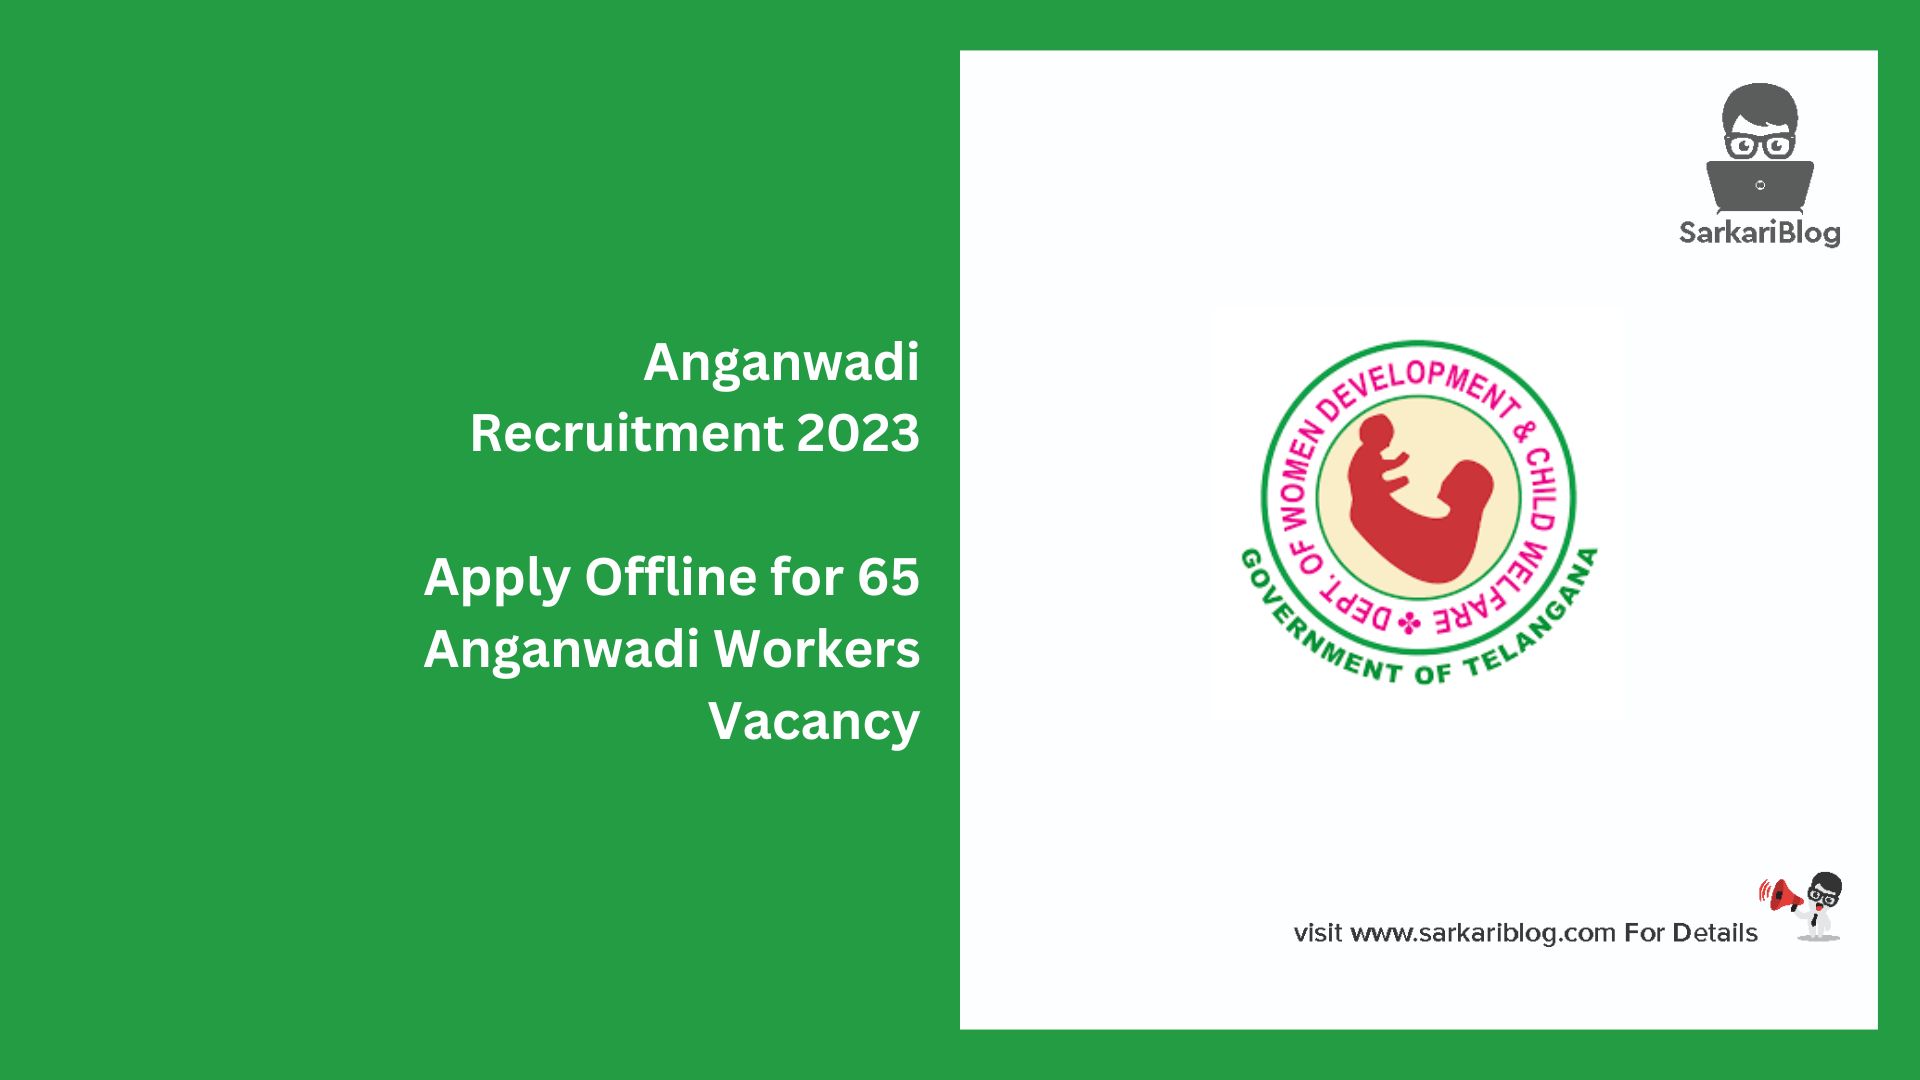 Anganwadi Recruitment 2023